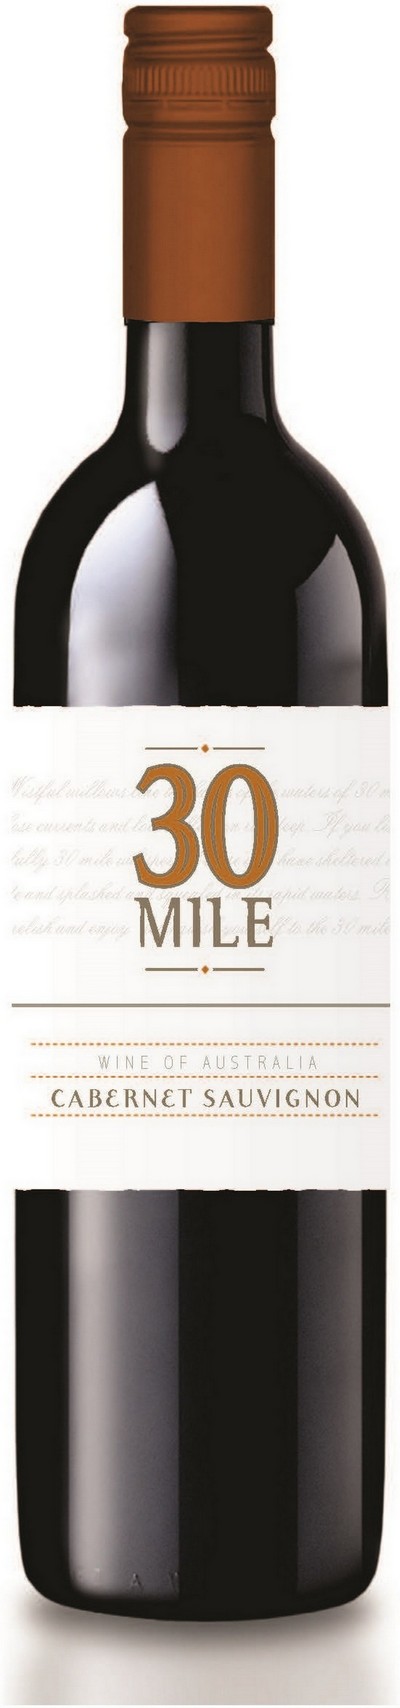 30-mile-cabernet-sauvignon-2018